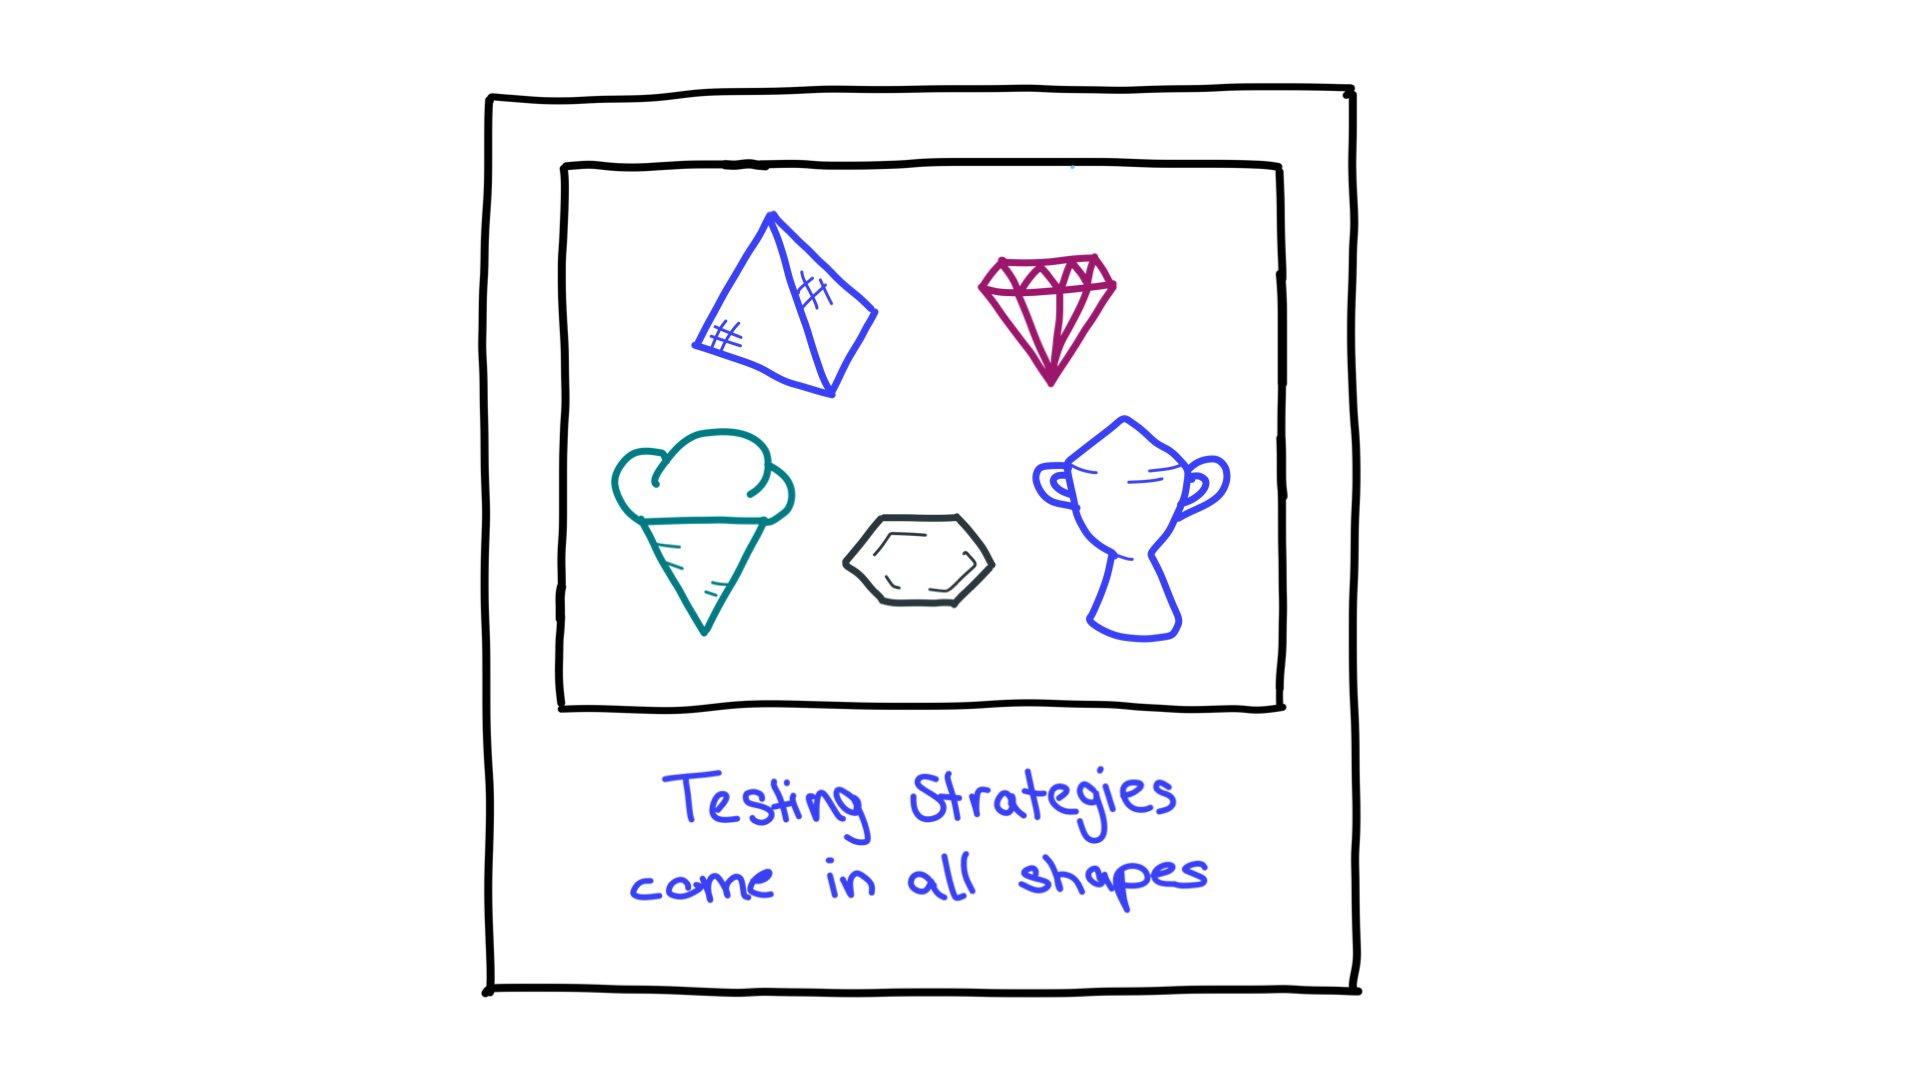 Một số ví dụ về các hình dạng của chiến lược thử nghiệm: hình kim tự tháp, hình kim cương cắt, hình kem ốc quế, hình lục giác và chiếc cúp.